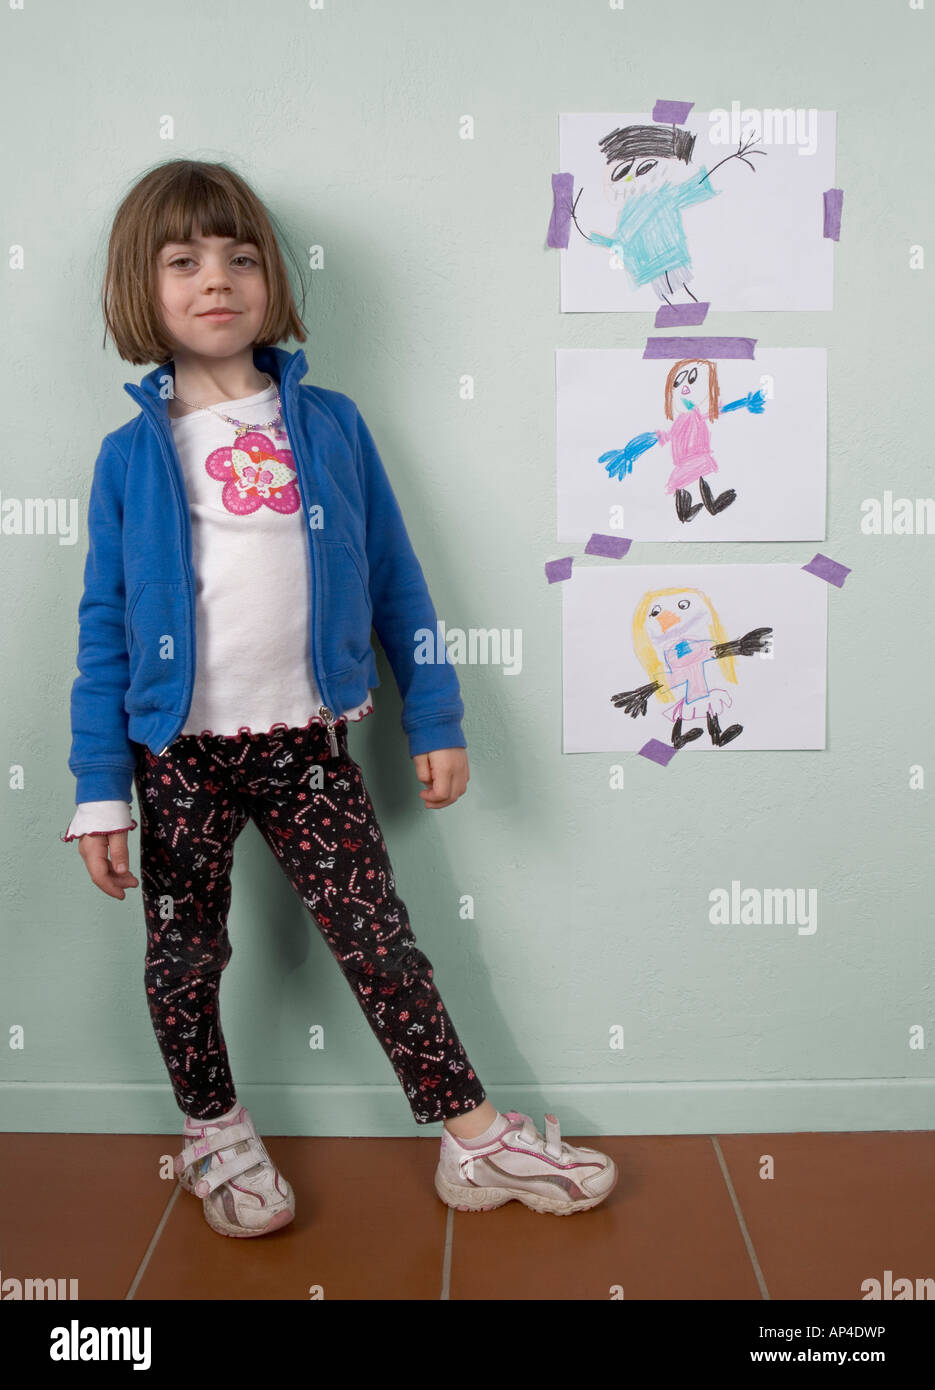 Ein junges Mädchen zeigt ihre Kreide-Malerei Stockfoto